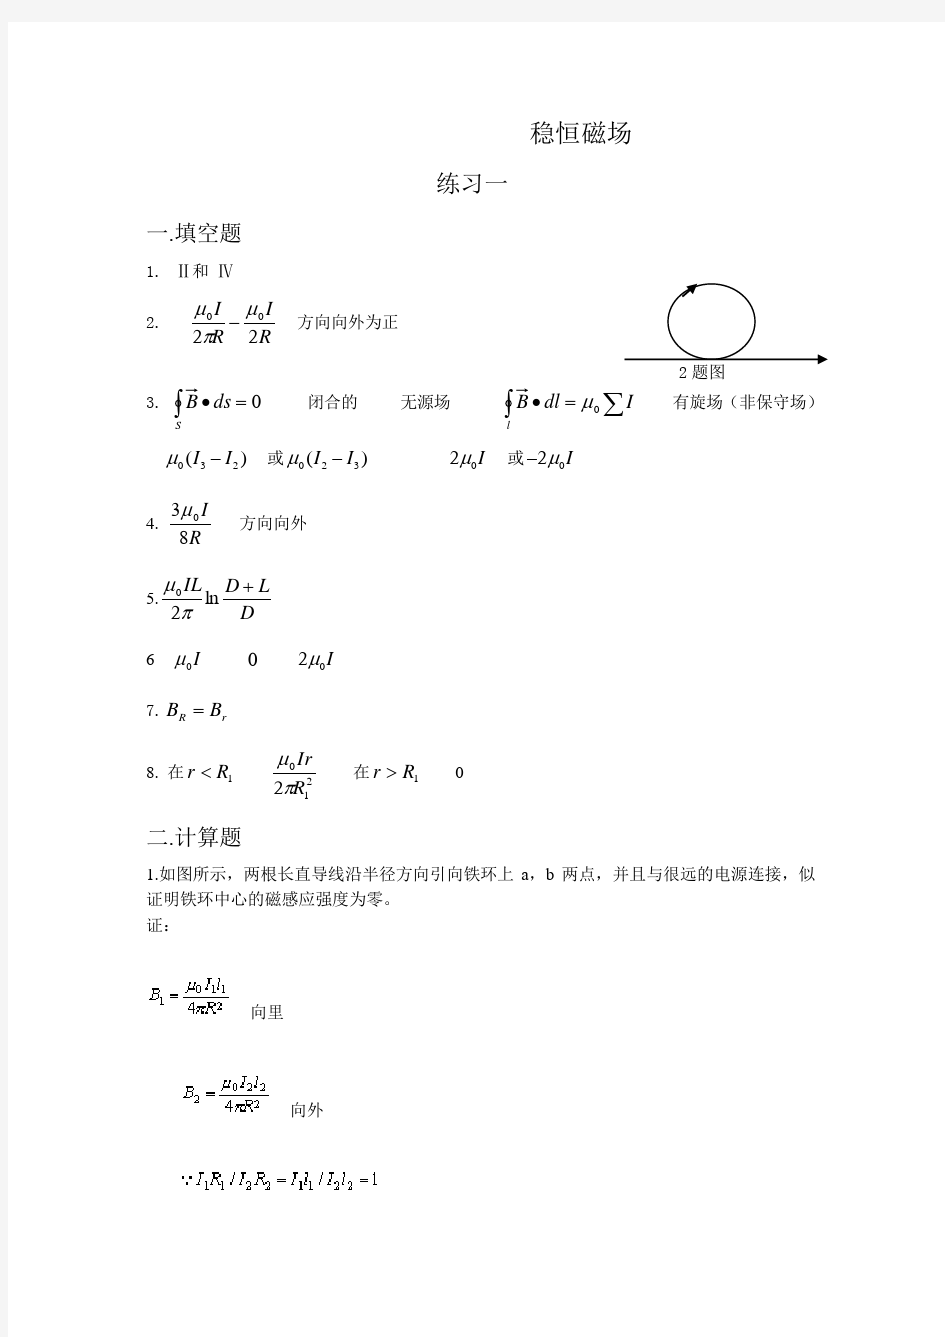 重庆理工大学-大学物理-习题册-稳恒磁场答案